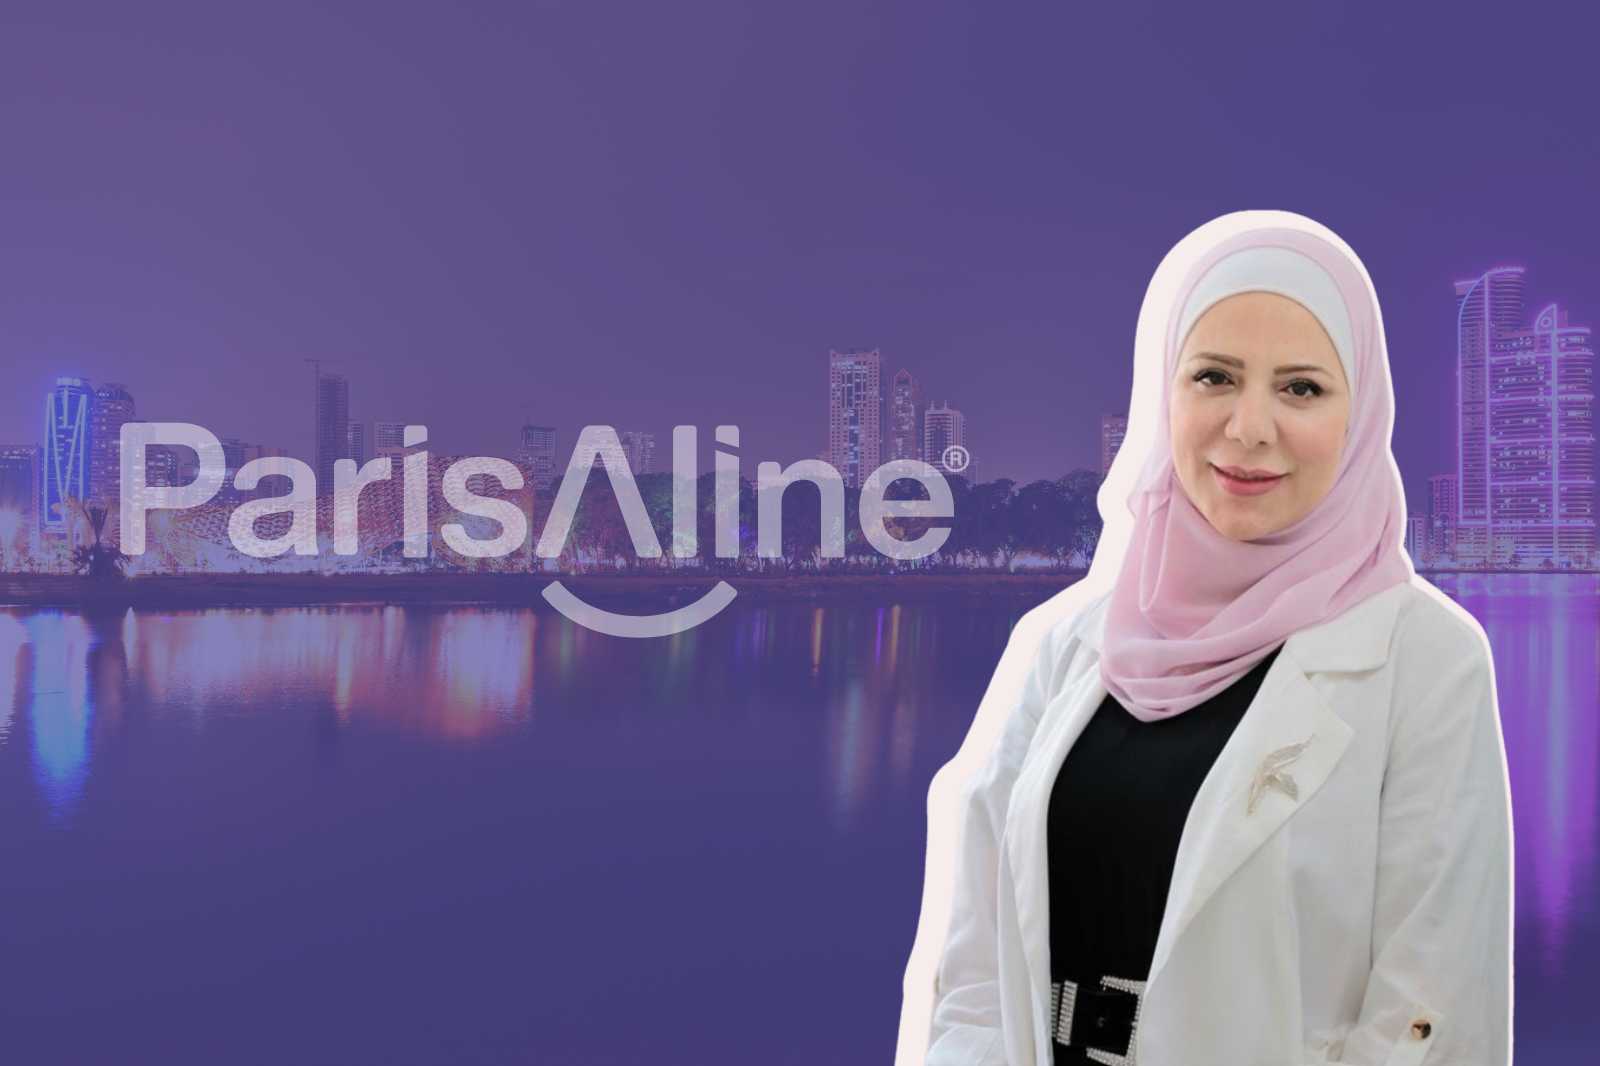 ParisAline Accueille le Dr Amam Ali Amam : L’Excellence Dentaire Portée à un Nouveau Niveau